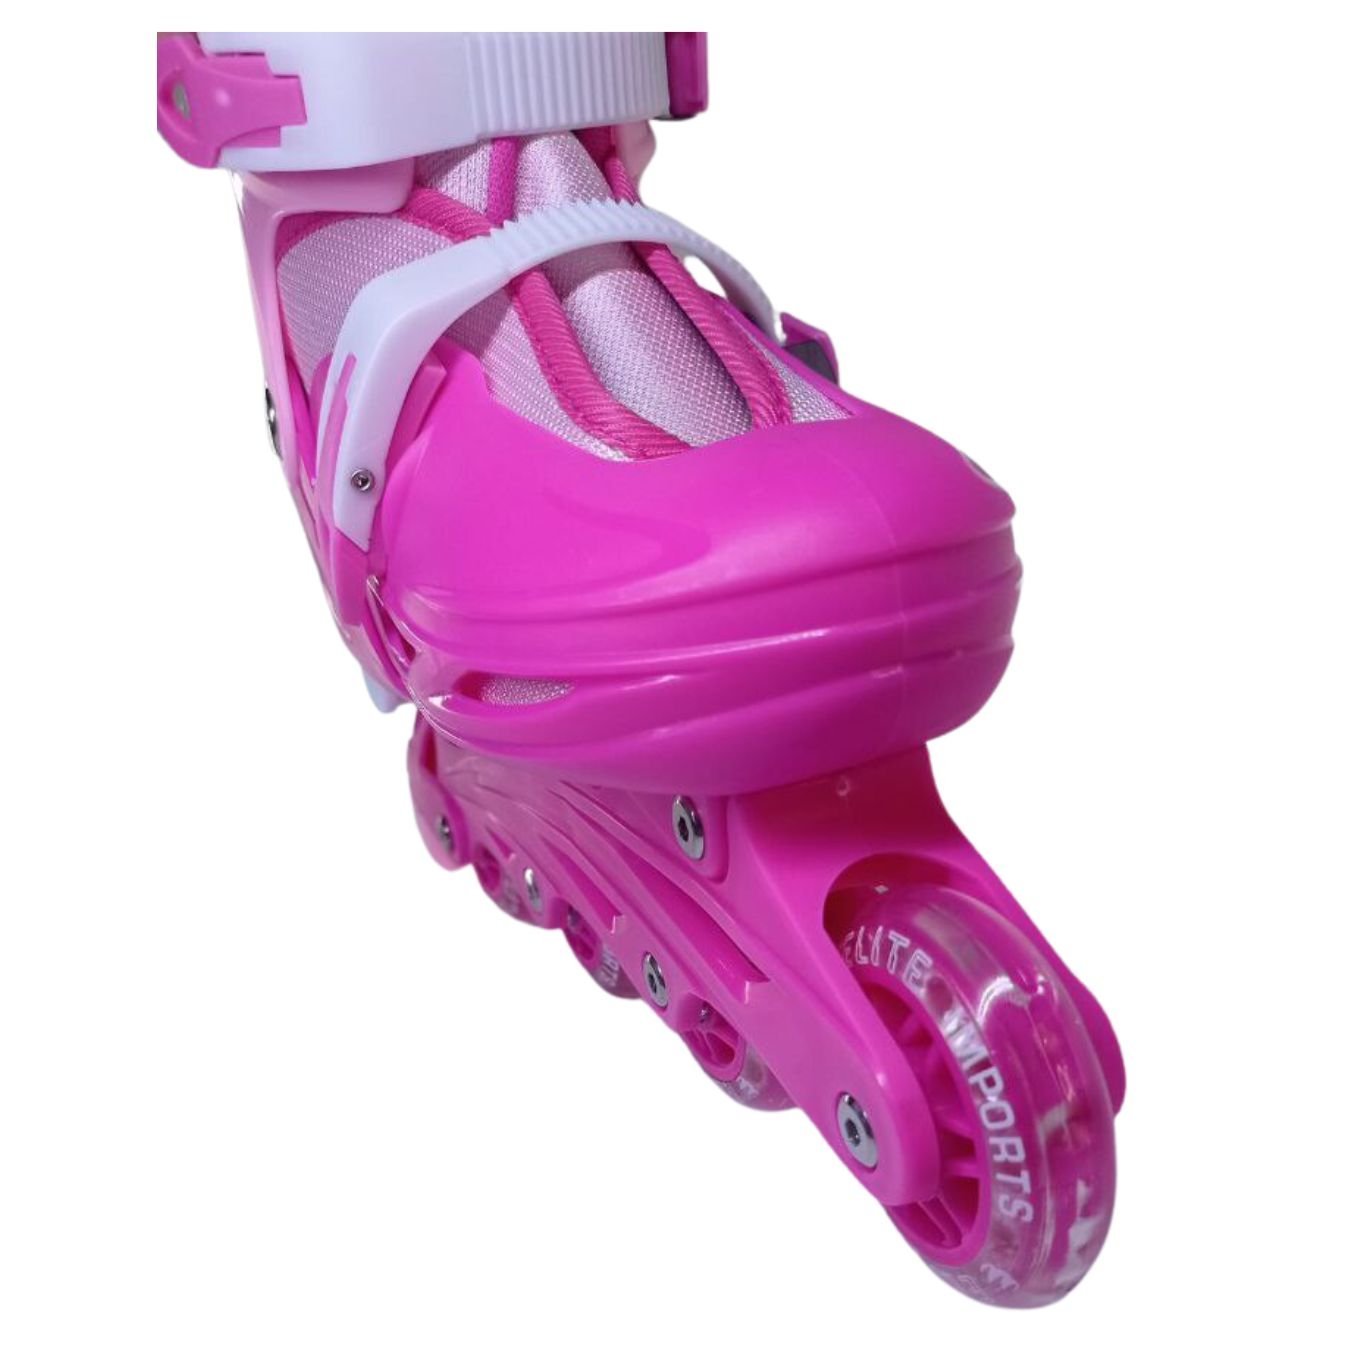 Patins Roller De 4 Rodas Rosa Com Kit de Proteção Tm:36/39 - 8